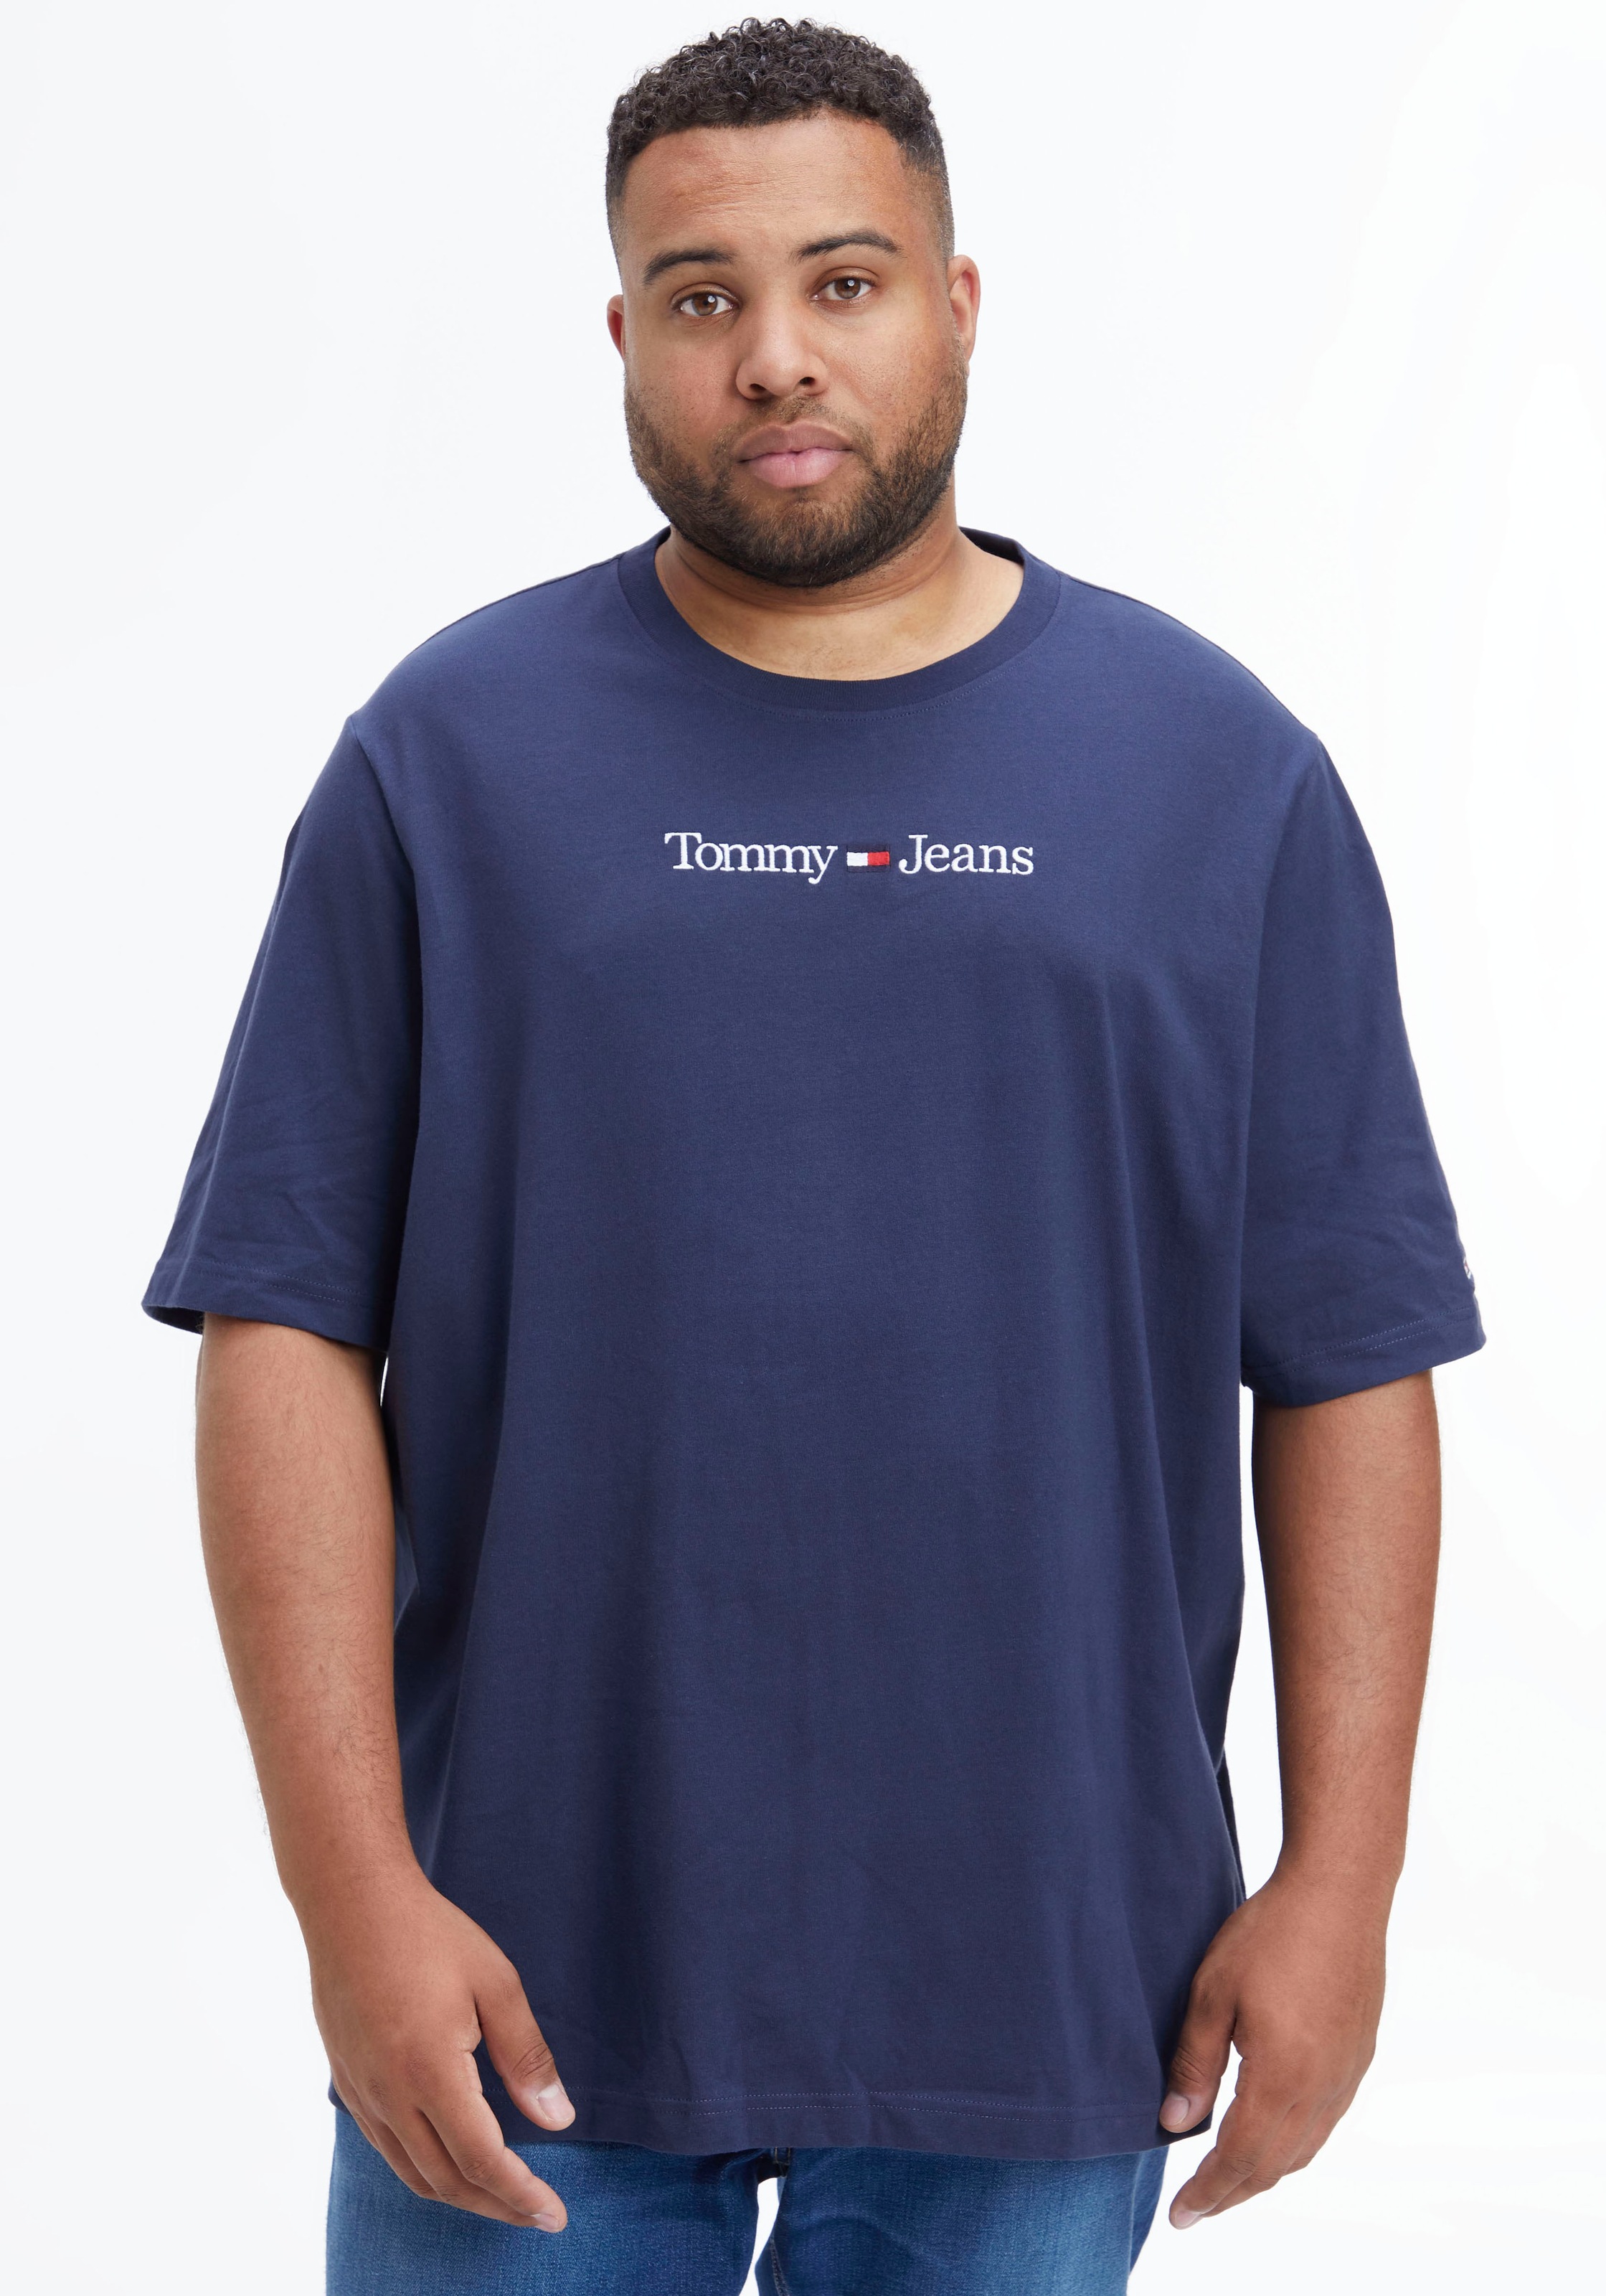 LO«, Brust auf mit Branding Tommy LINEAR | Plus BAUR PLUS der T-Shirt Tommy-Jeans ▷ bestellen »TJM Jeans